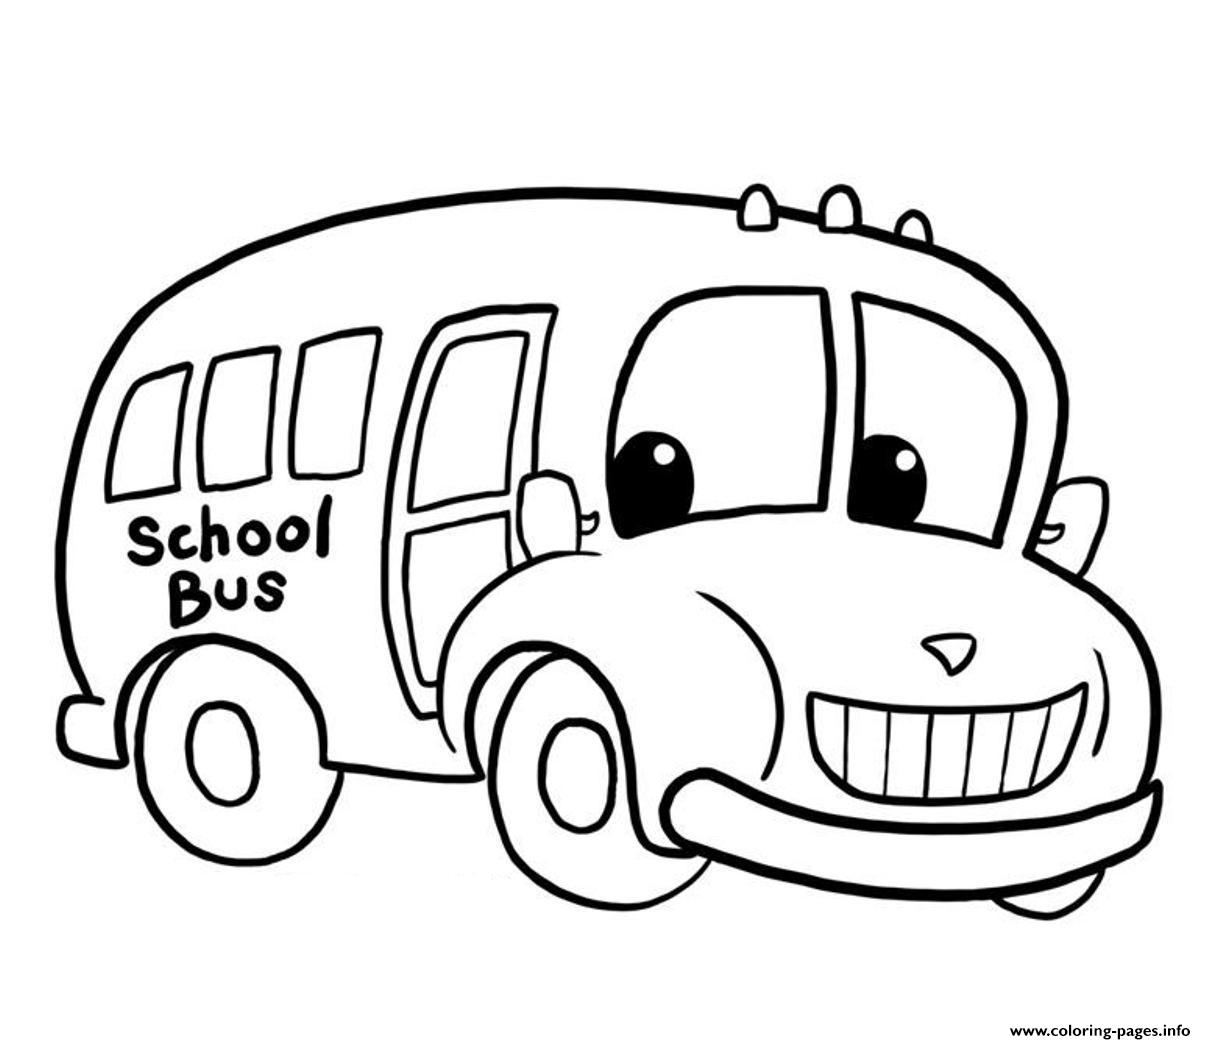 Xe buýt đồ chơi cho bé vẽ và tô màu  Dạy bé vẽ  Dạy bé tô màu  Toy Bus  Drawing and Coloring  YouTube